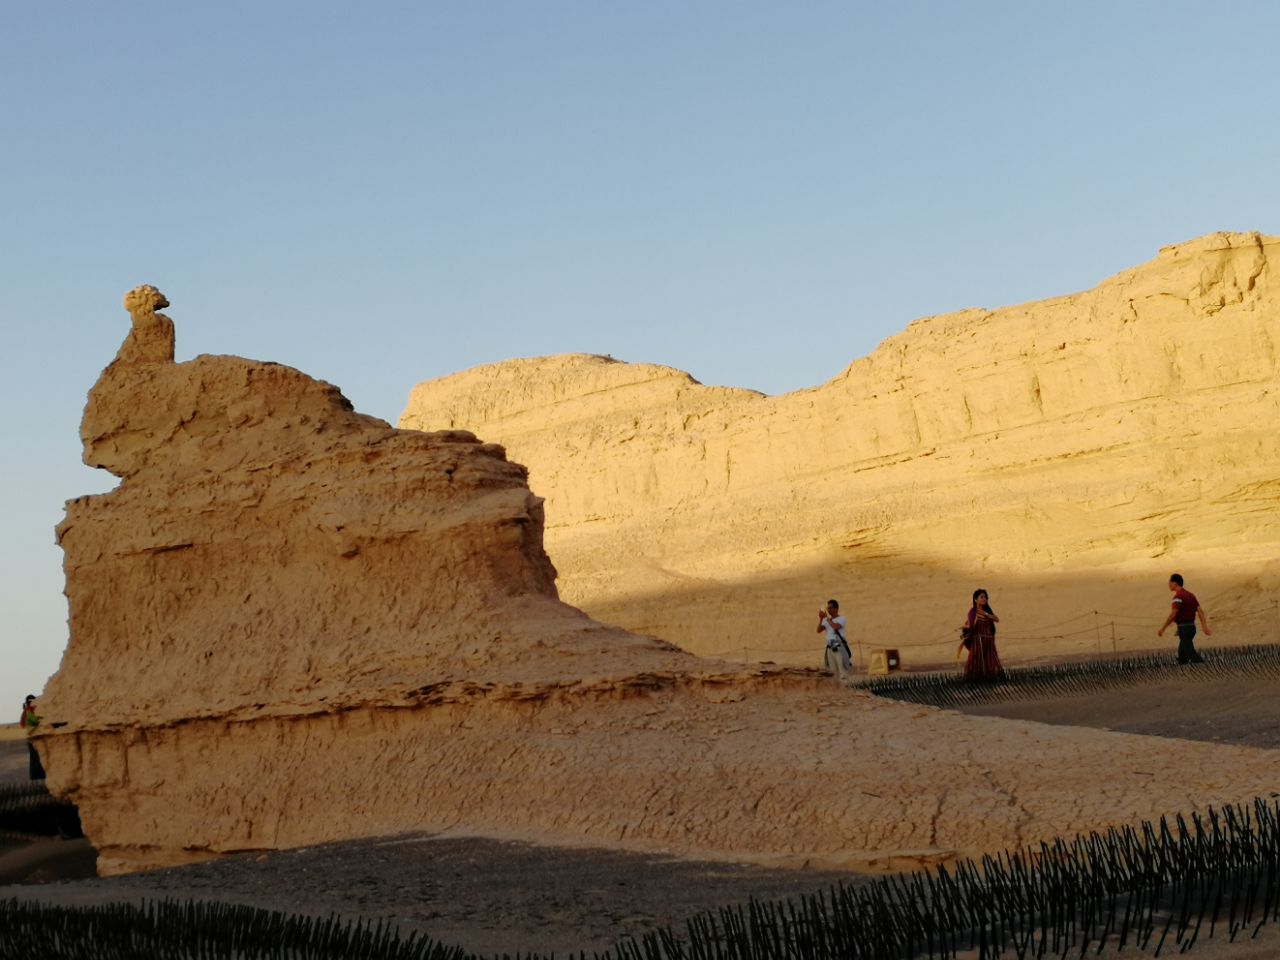 地处新疆,甘肃交界处,距敦煌180公里,睌霞下看,比较壮观.